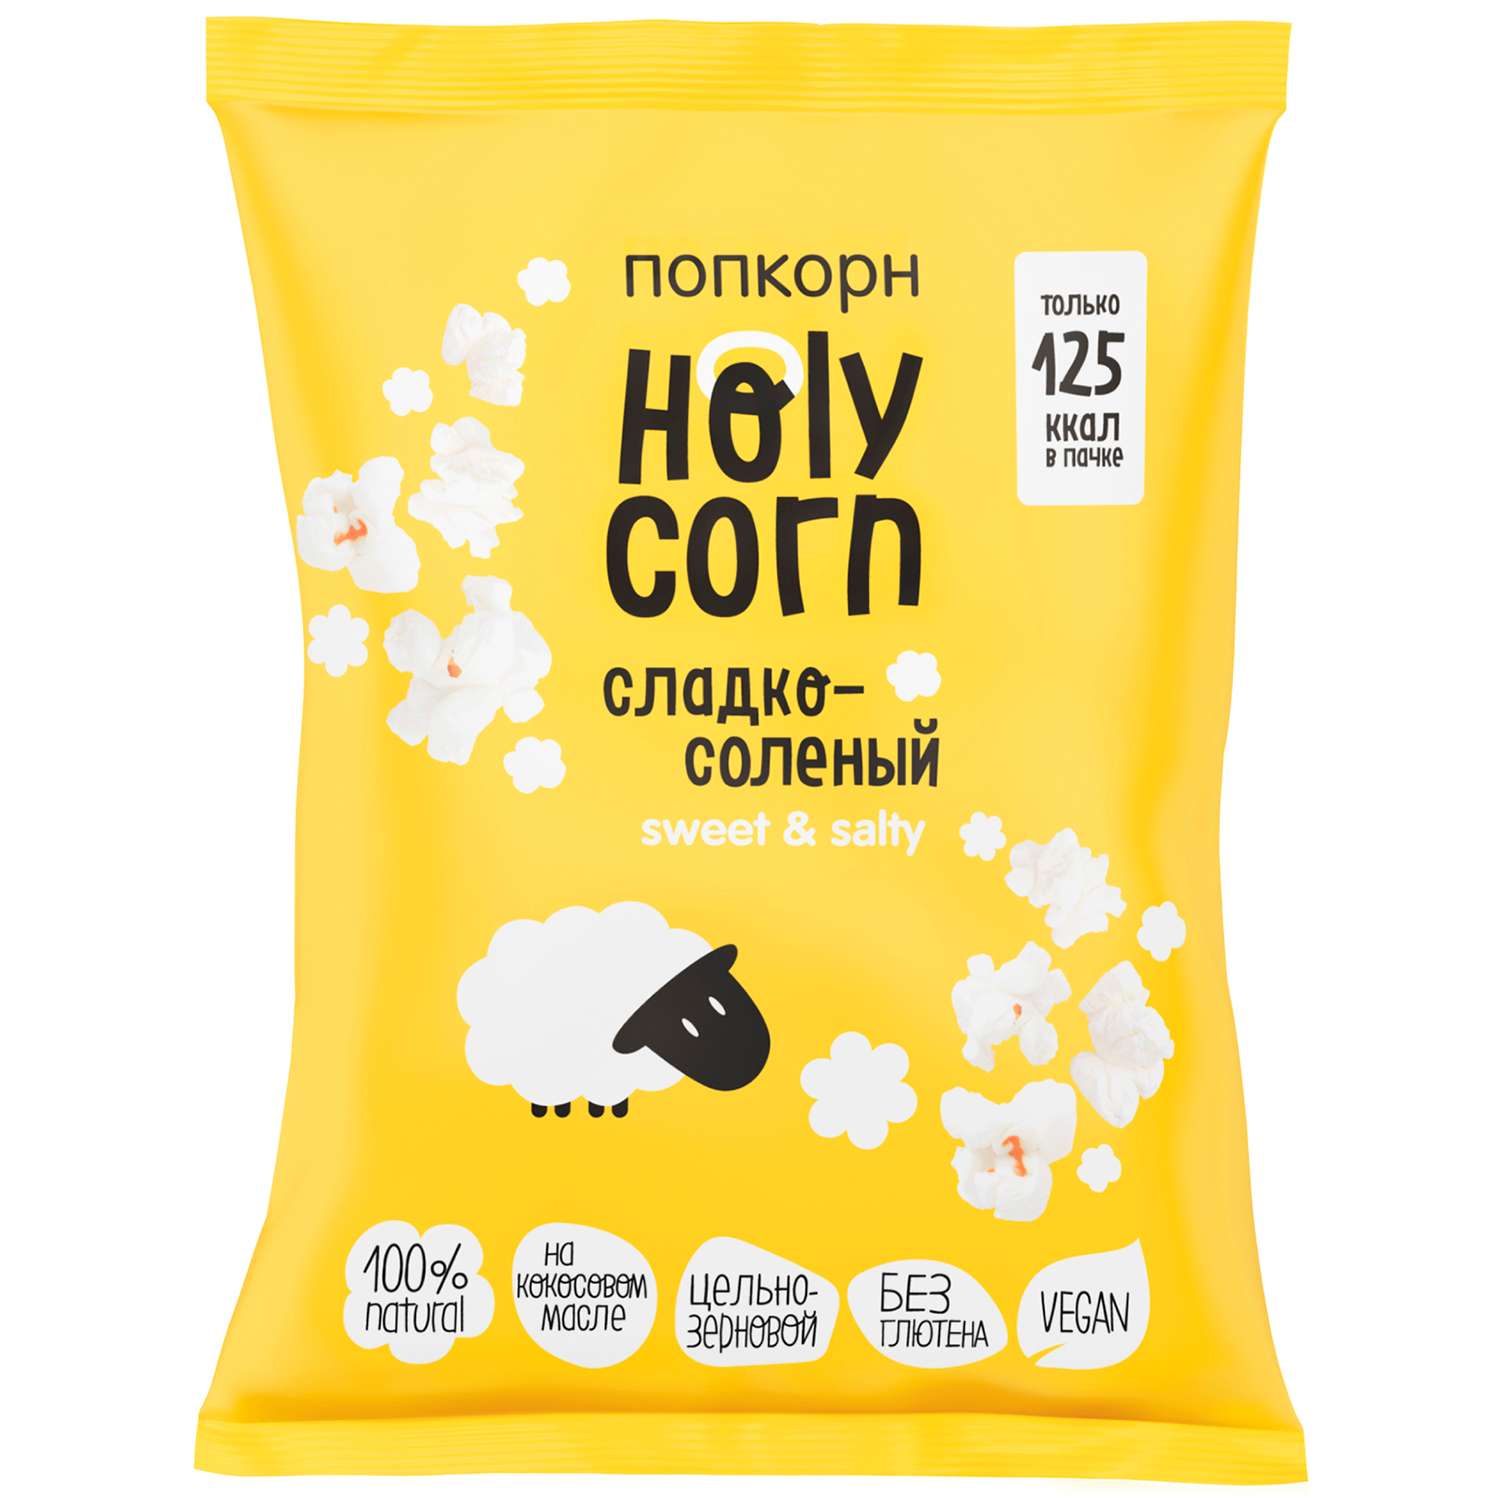 Попкорн Holy Corn сладко-соленый 30г - фото 1